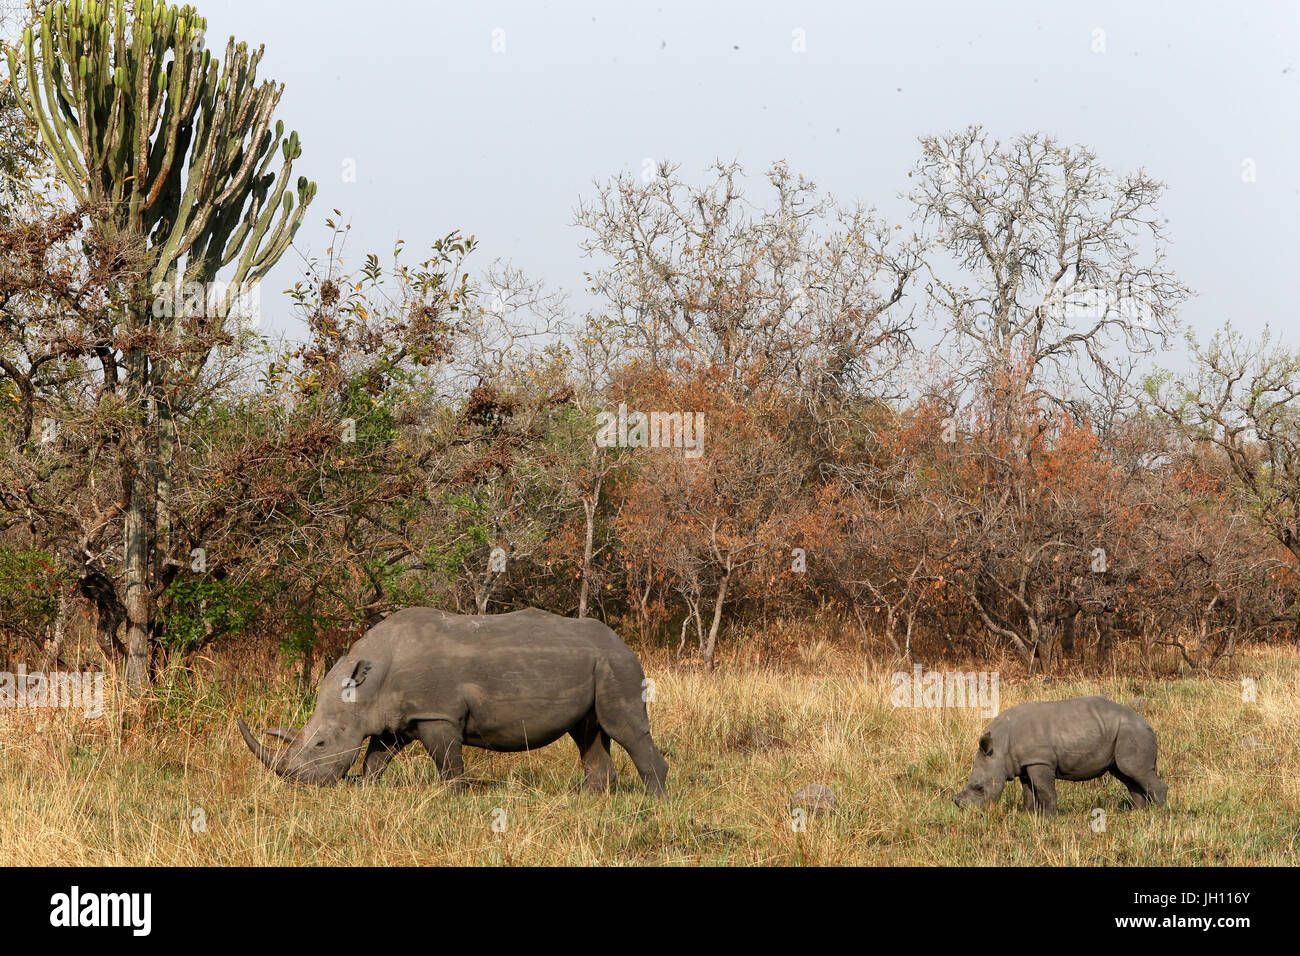 Rhinoceroses in Ziwa national park.  Uganda. Stock Photo